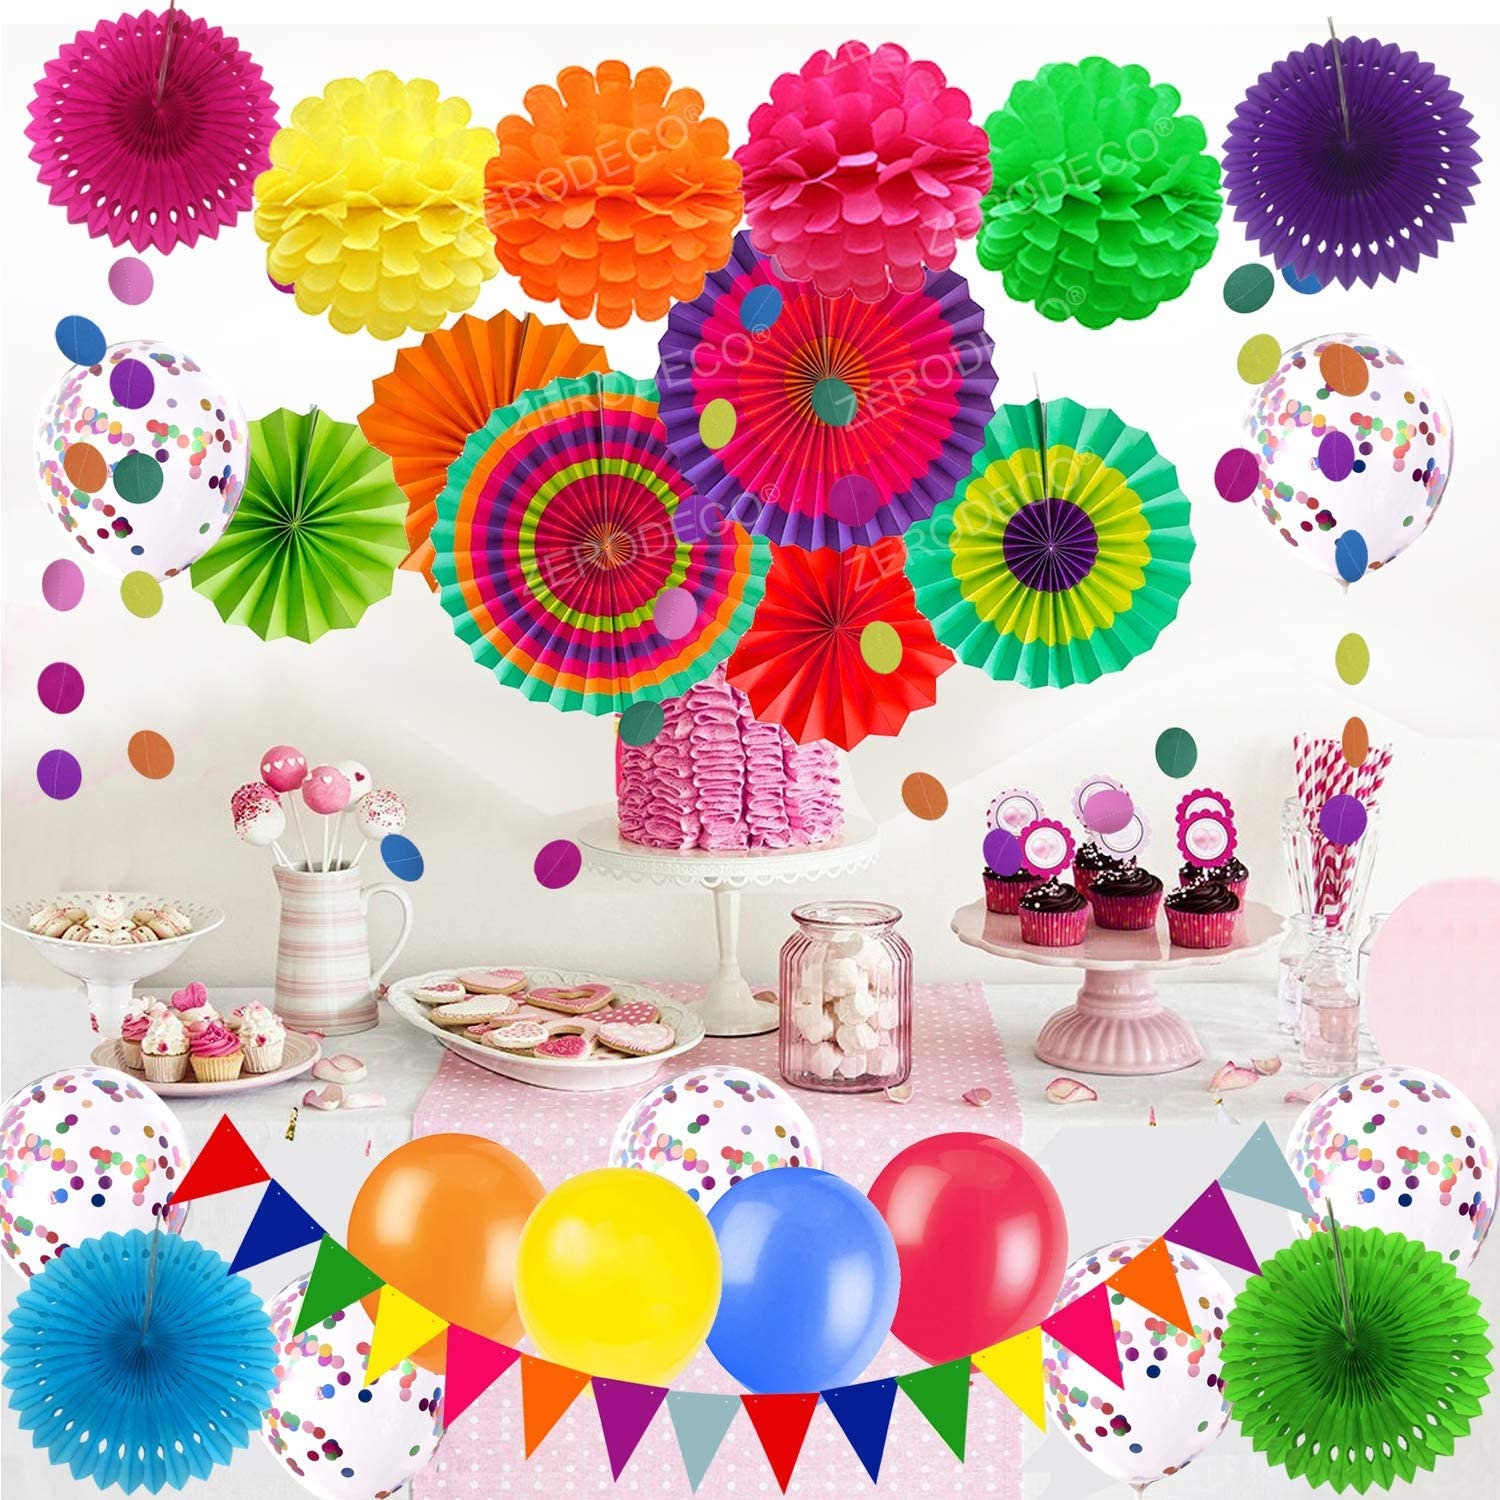 Party Decoration 21 Pcs Multicolor Hanging Paper Fans Pom Poms | Etsy